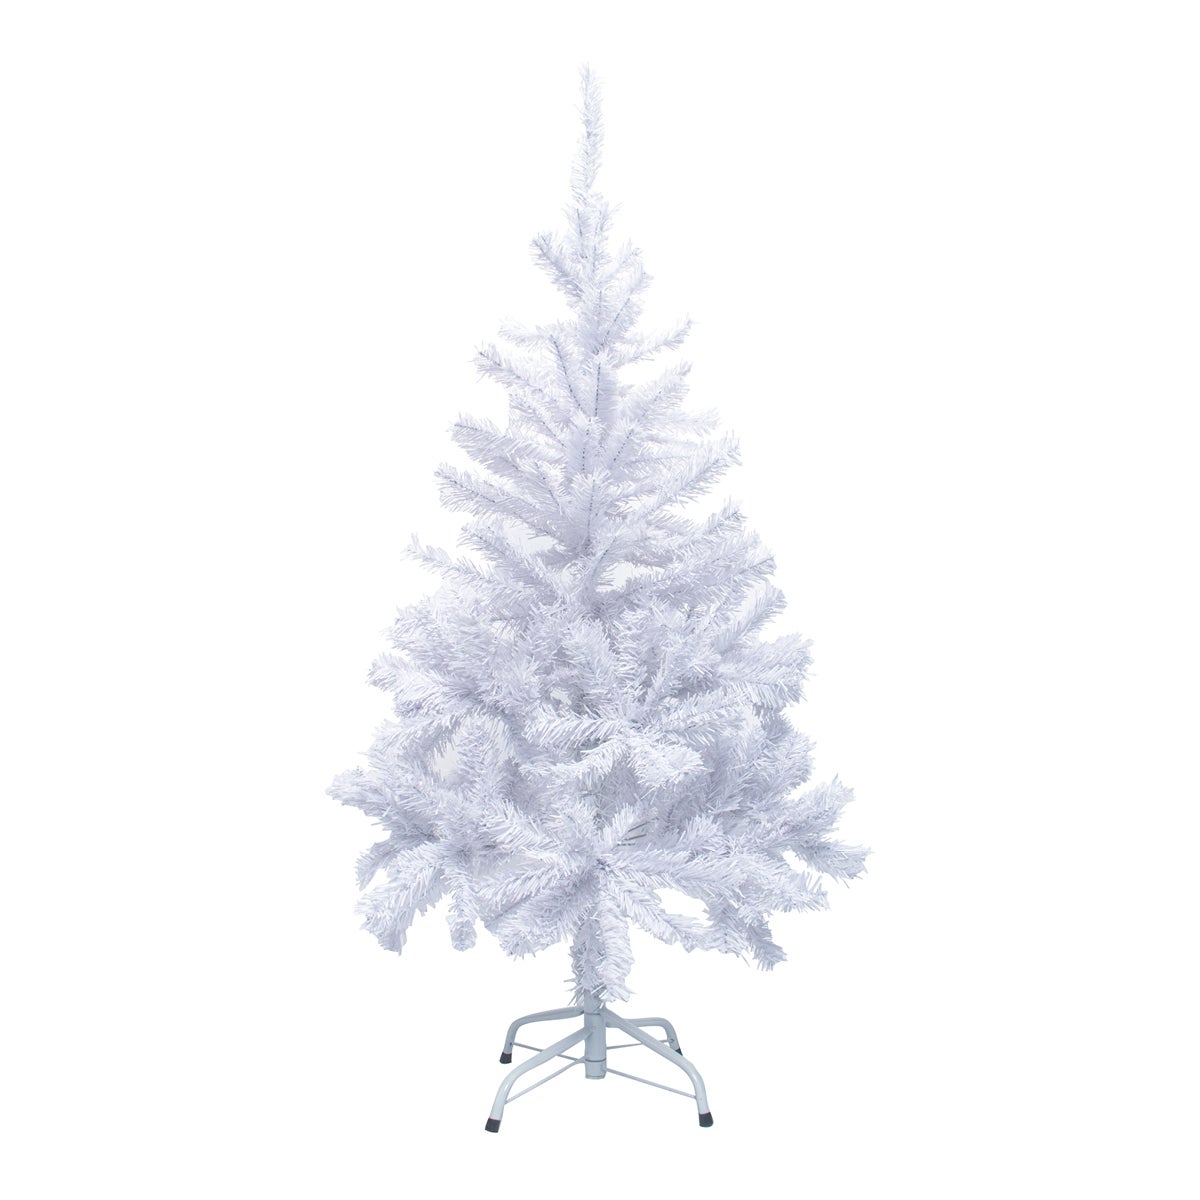 SAS® 1.2m White Pine Christmas Tree 300 Tips Full Figured Easy Assembly